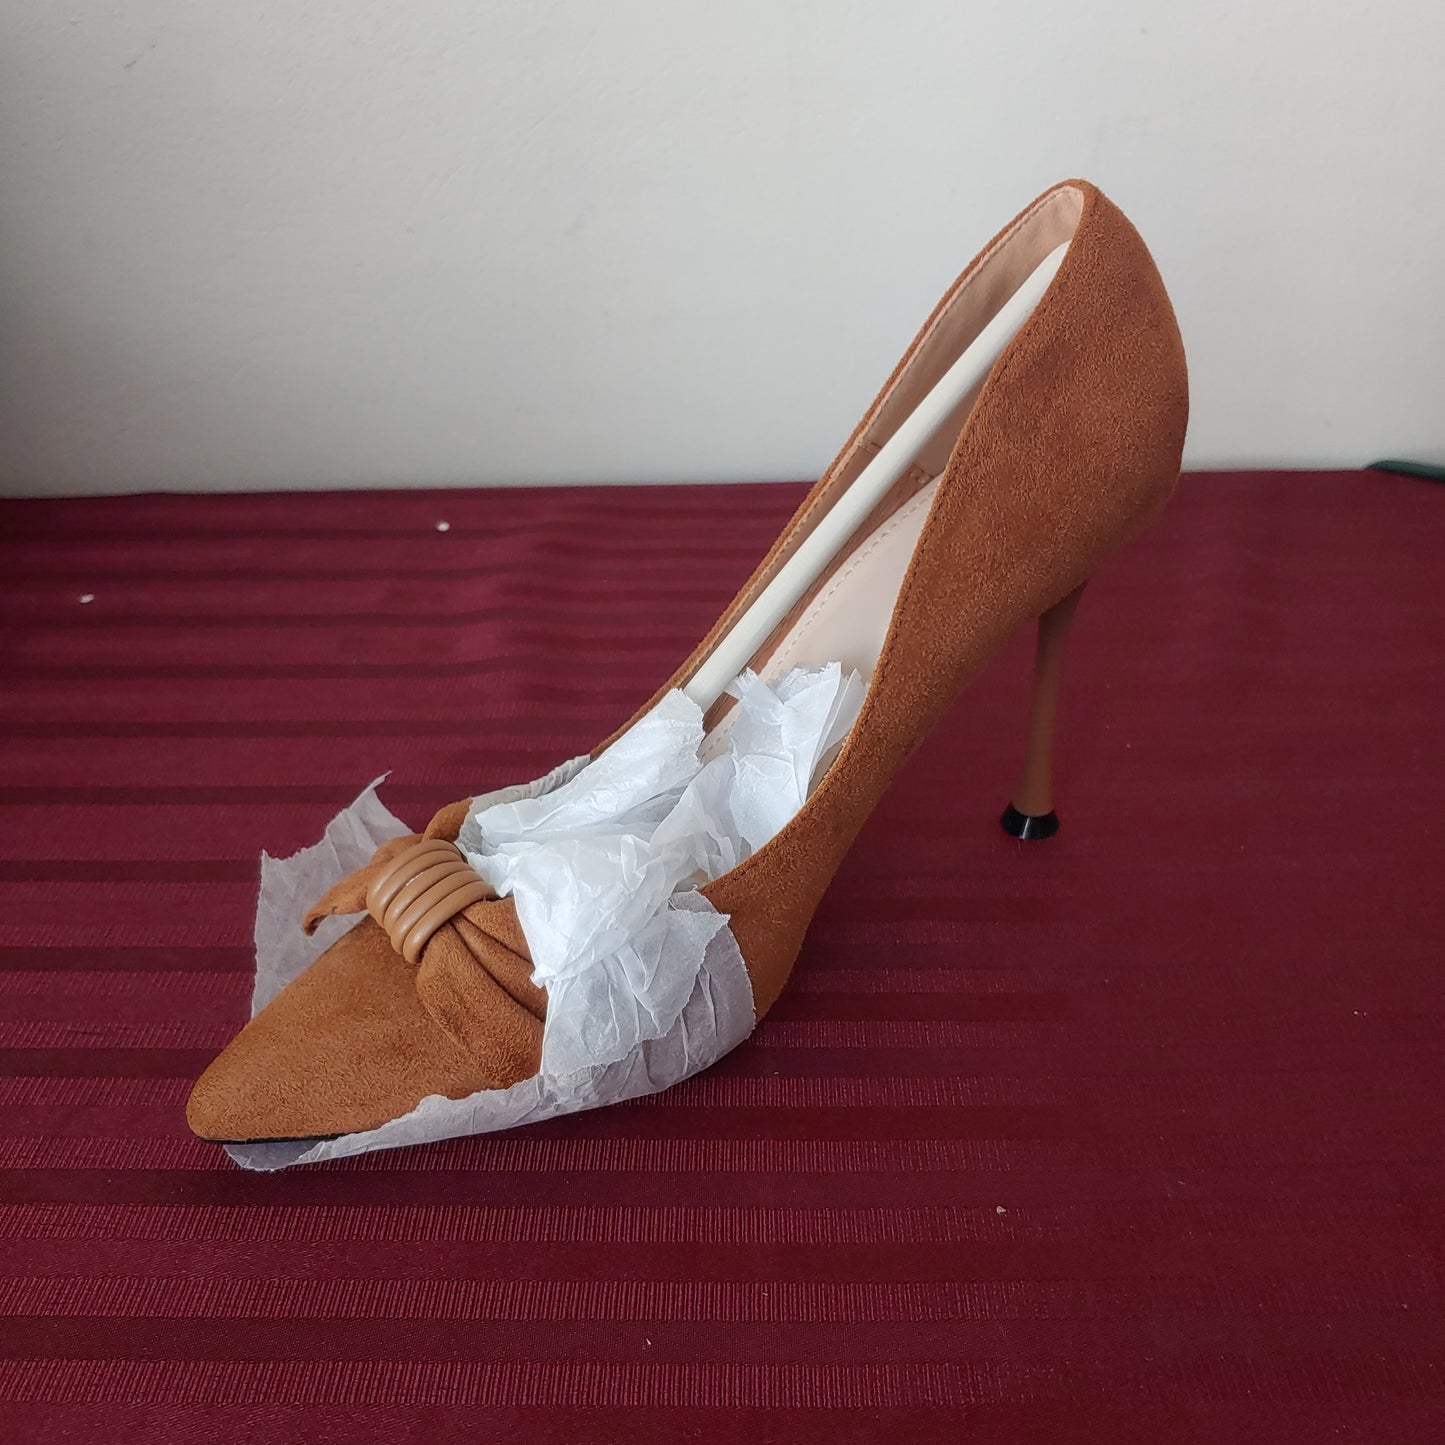 Zapatillas gamuza color marrón tacón de aguja talla 7 US (24 cm) - (Nuevo)